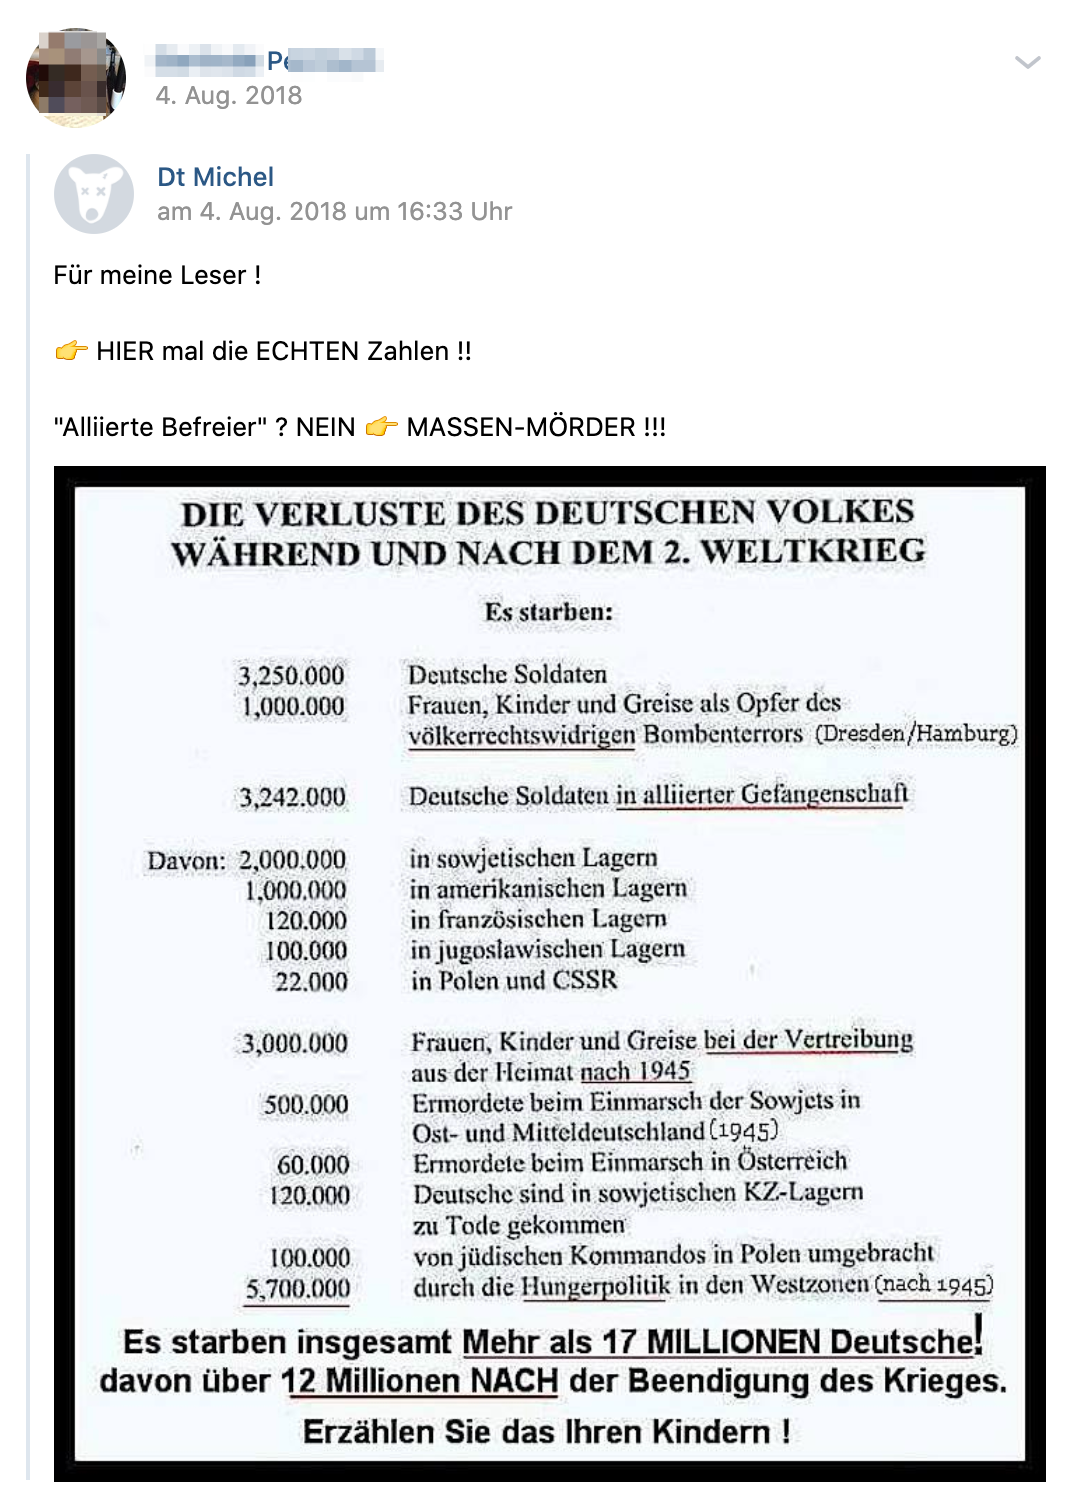 P. teilt erfundene Zahlen zu den "Verlusten des Deutschen Volkes während und nach dem 2. Weltkrieg" (Screenshot vk.com)